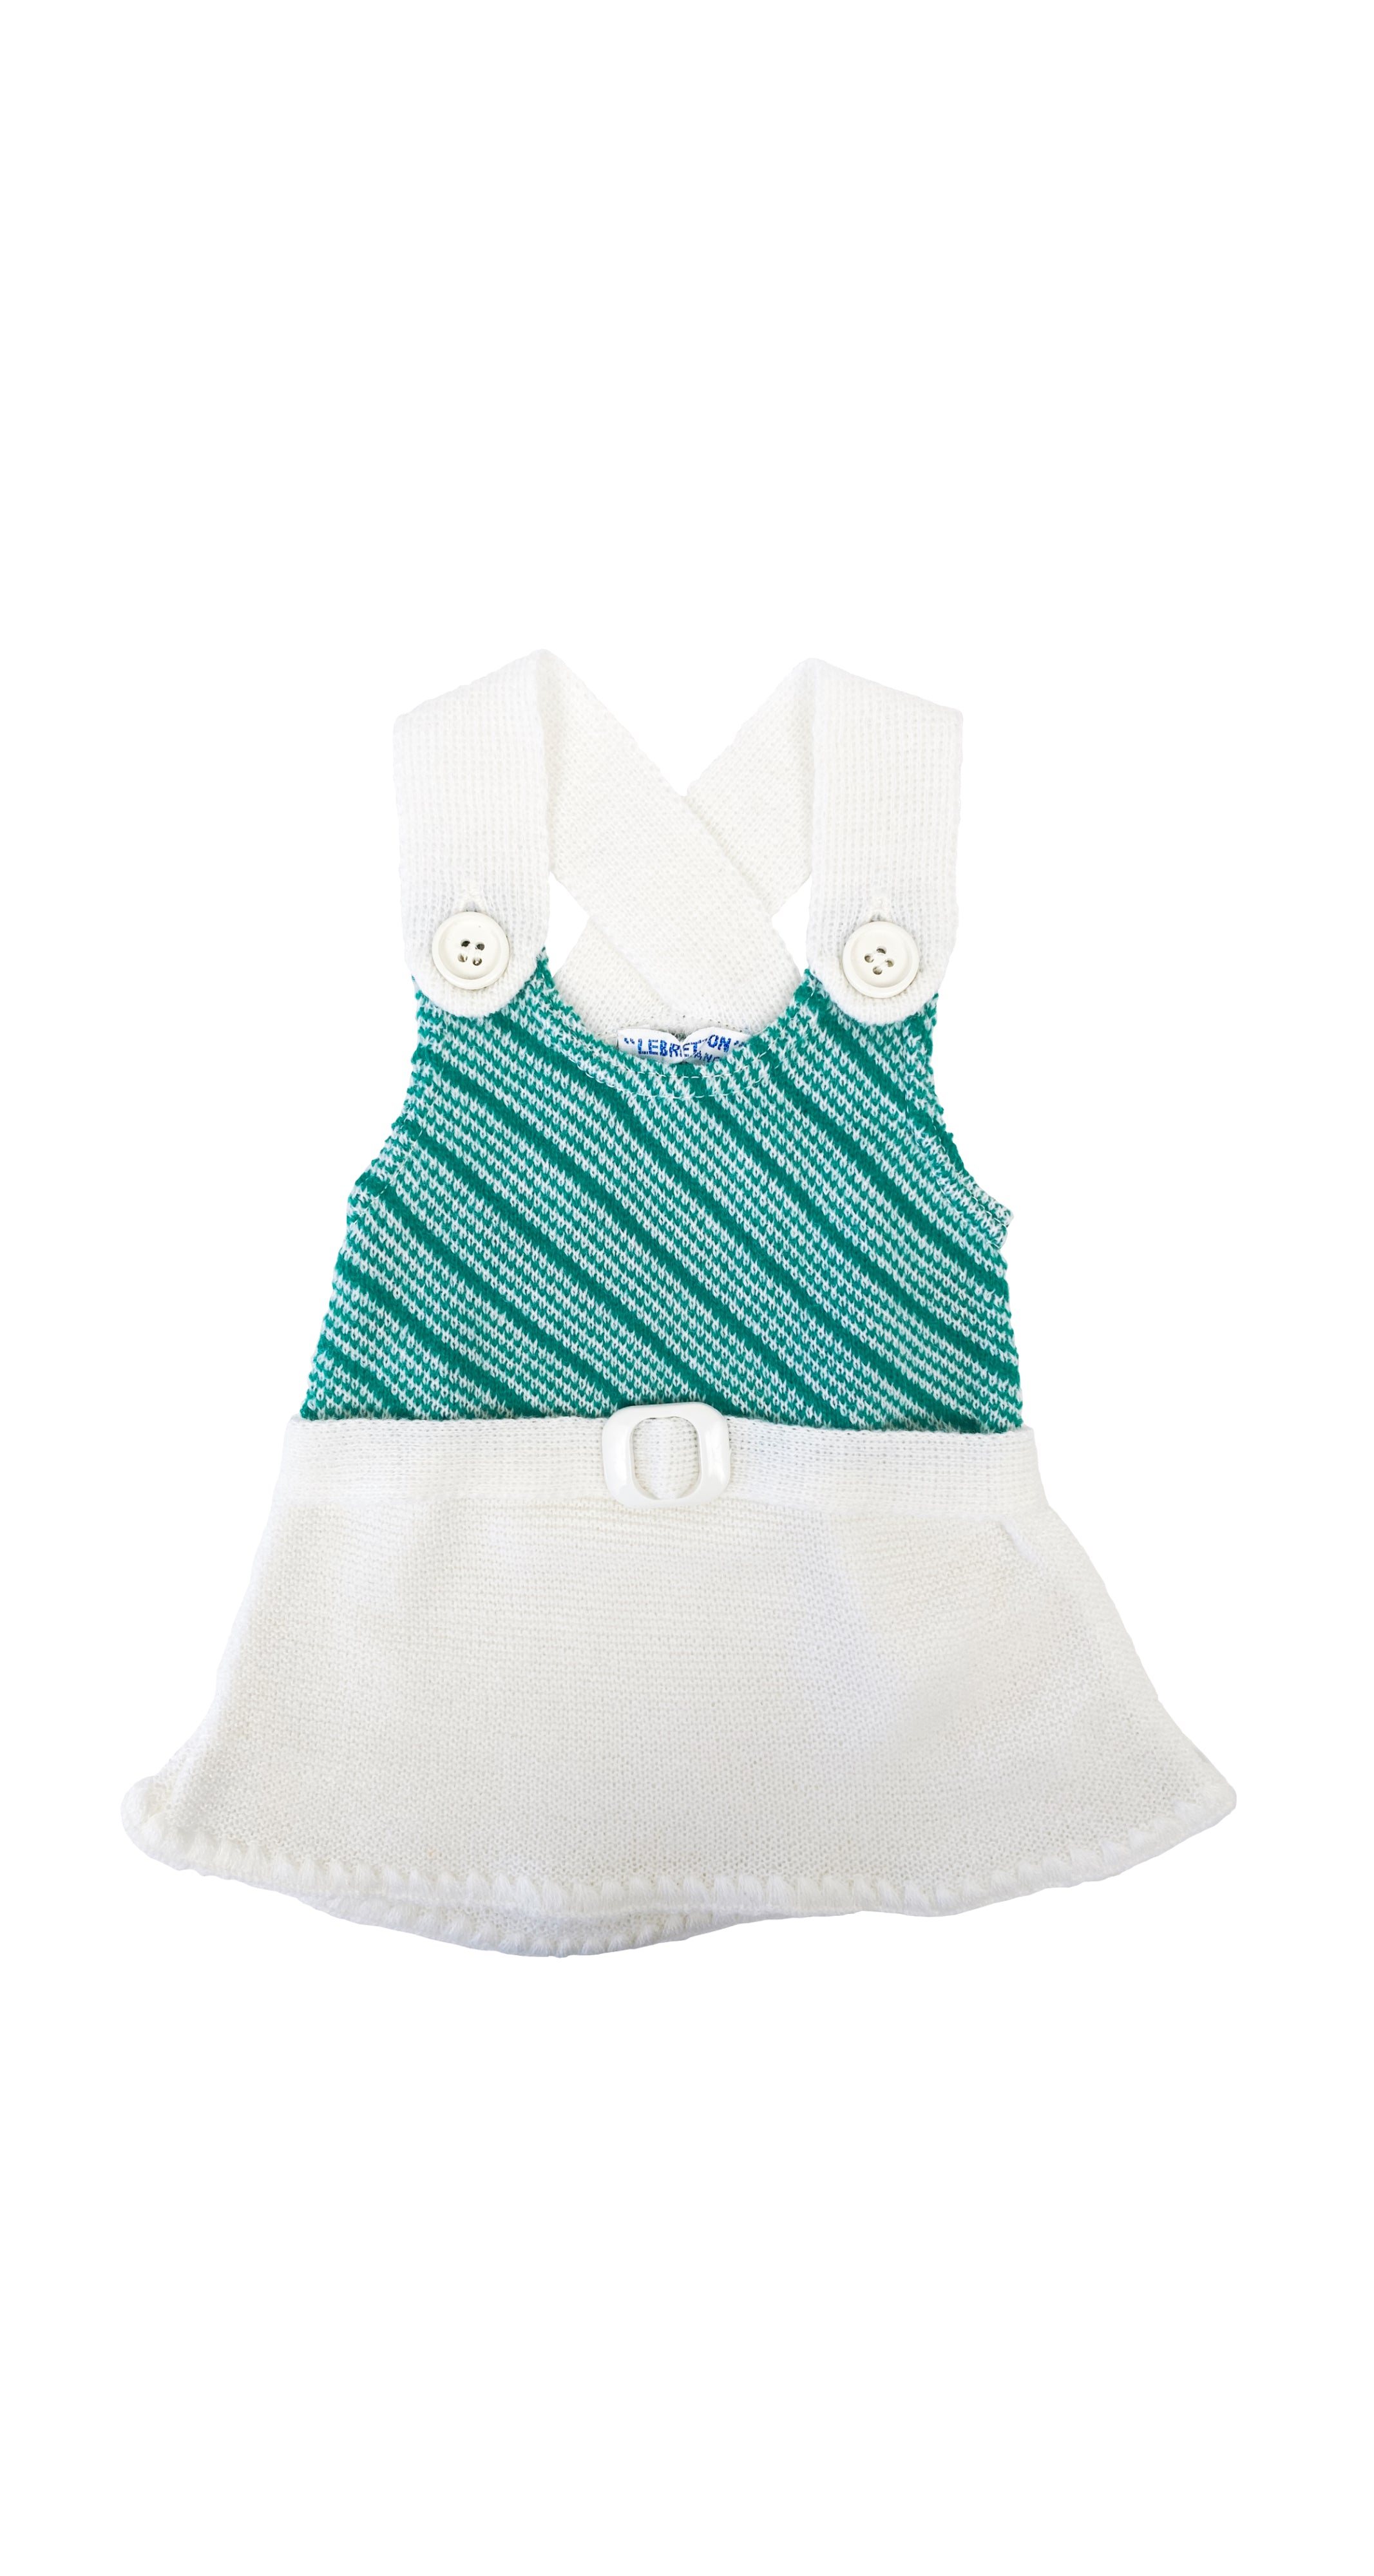 1970s NOS Girl's Green & White Knit Dress 3M